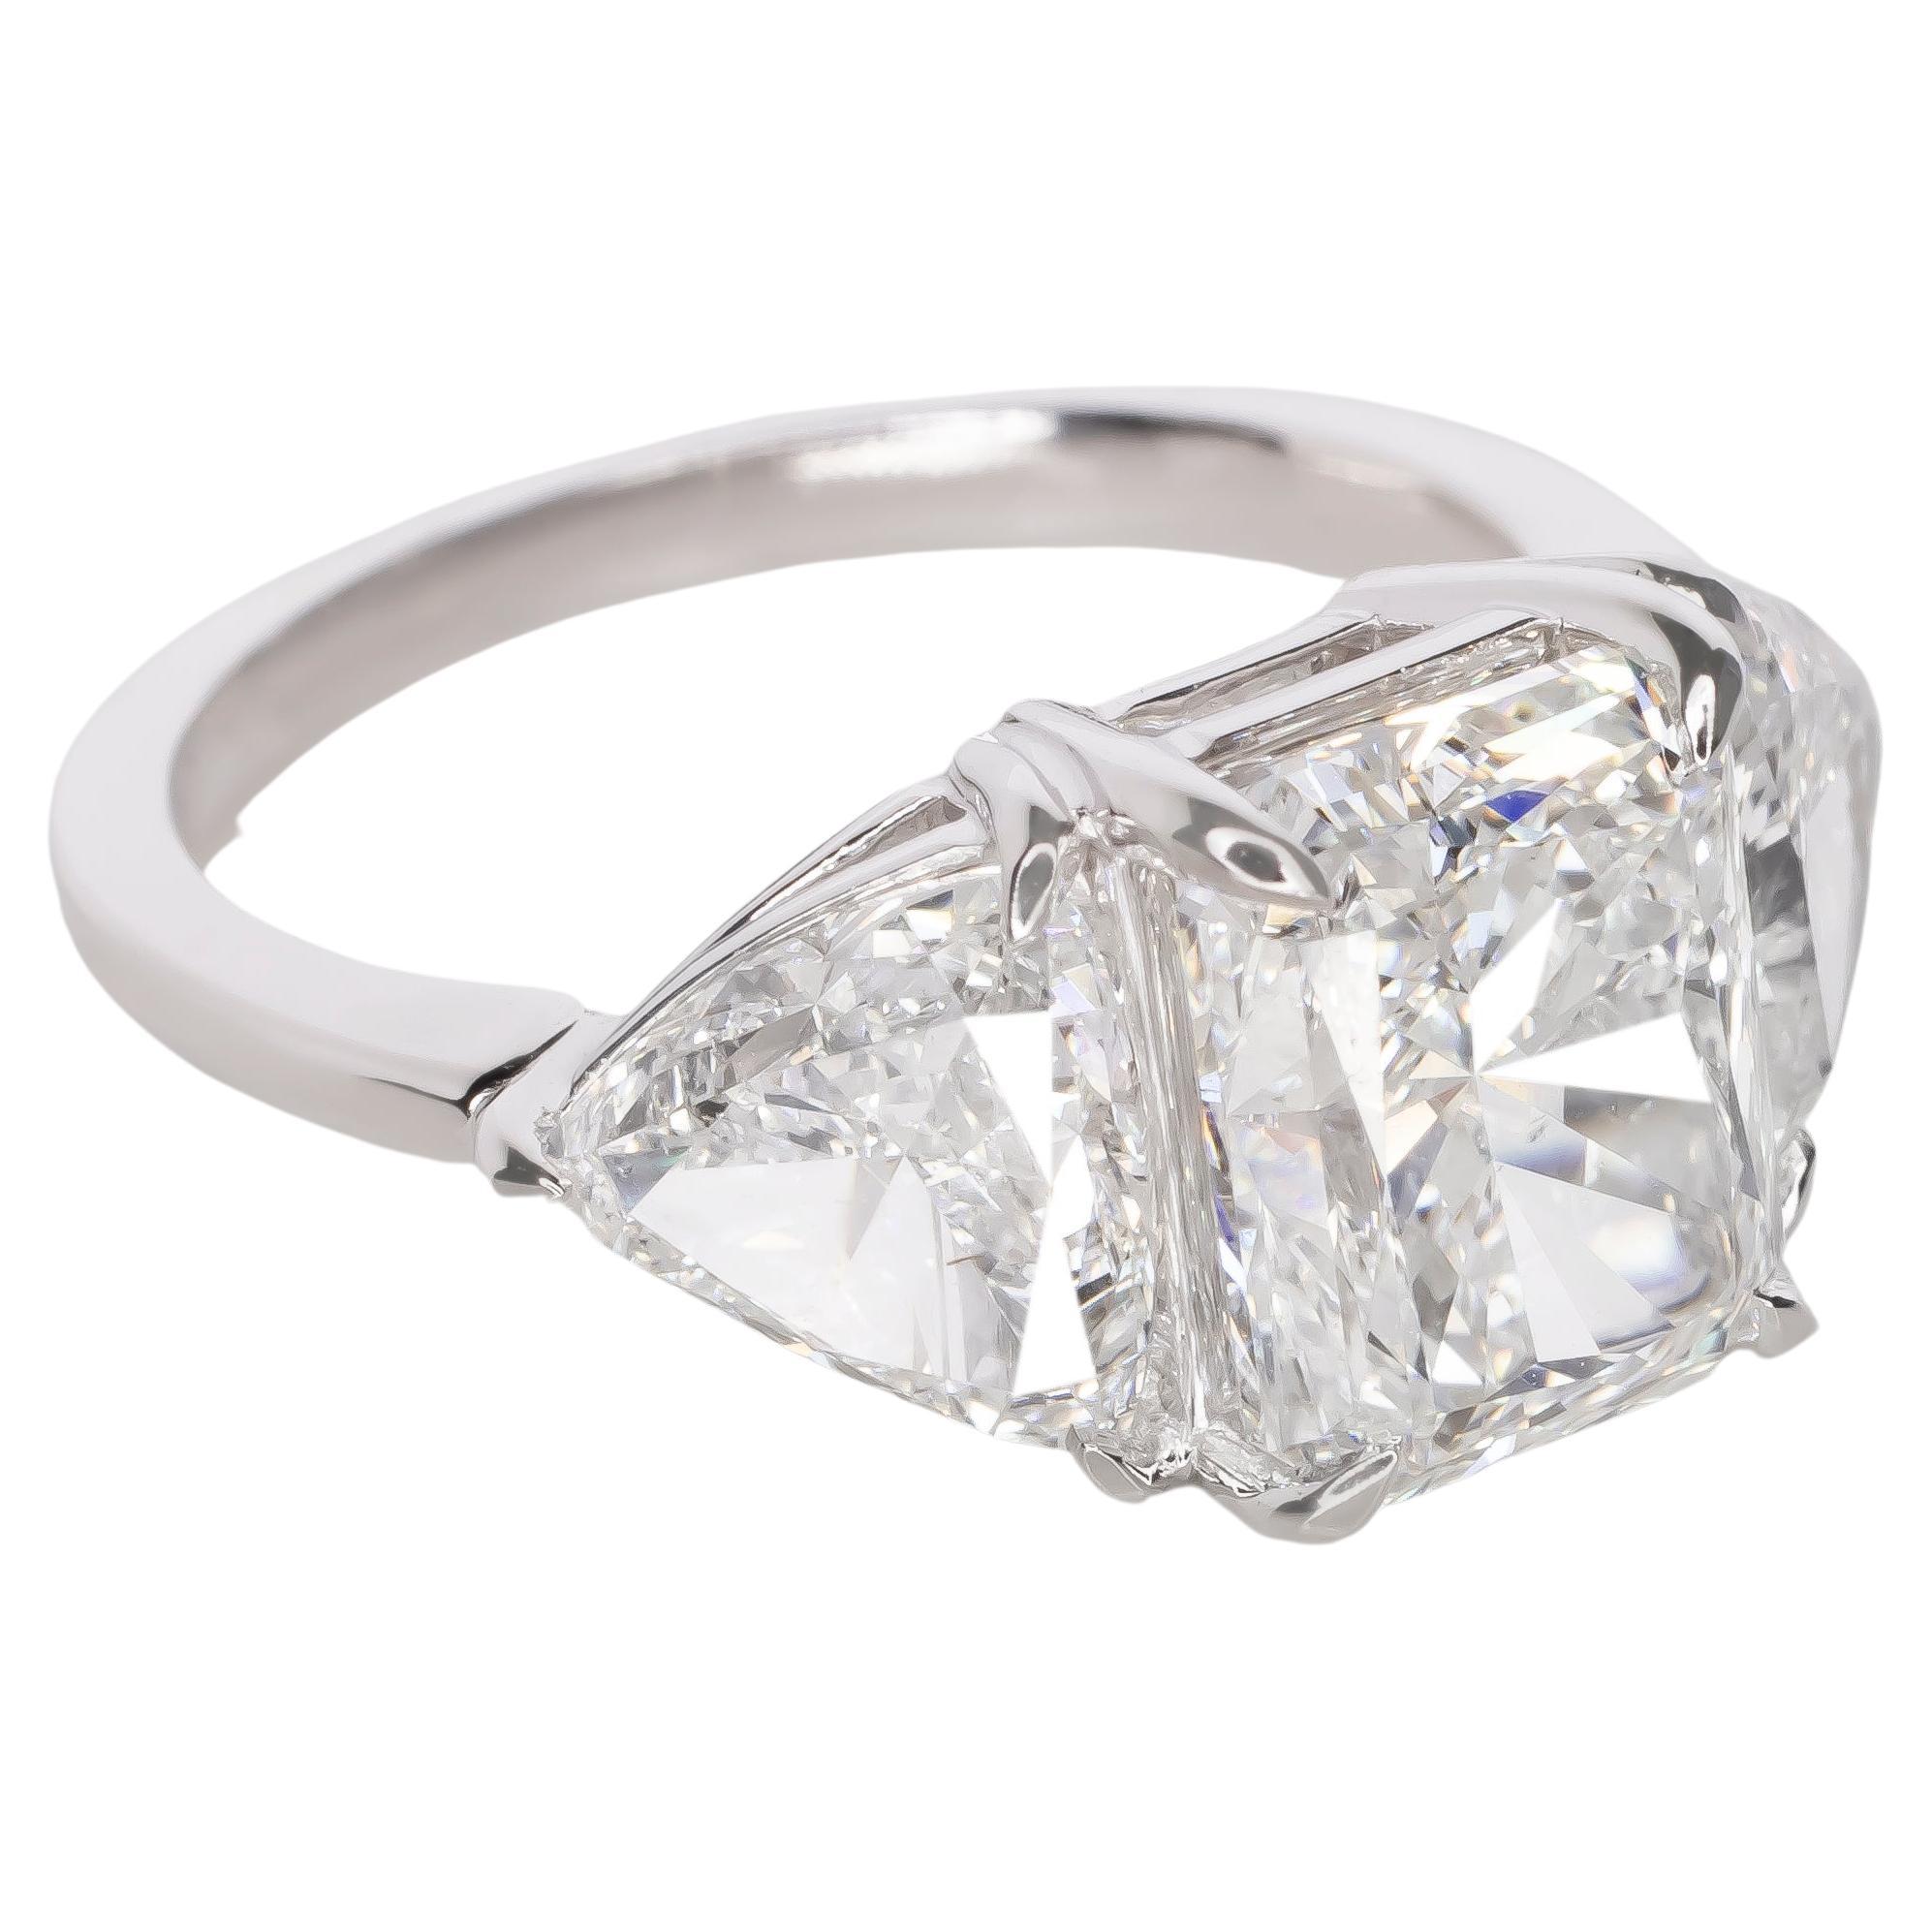 3.50 Carat GIA Certified Radiant Cut Diamond Ring